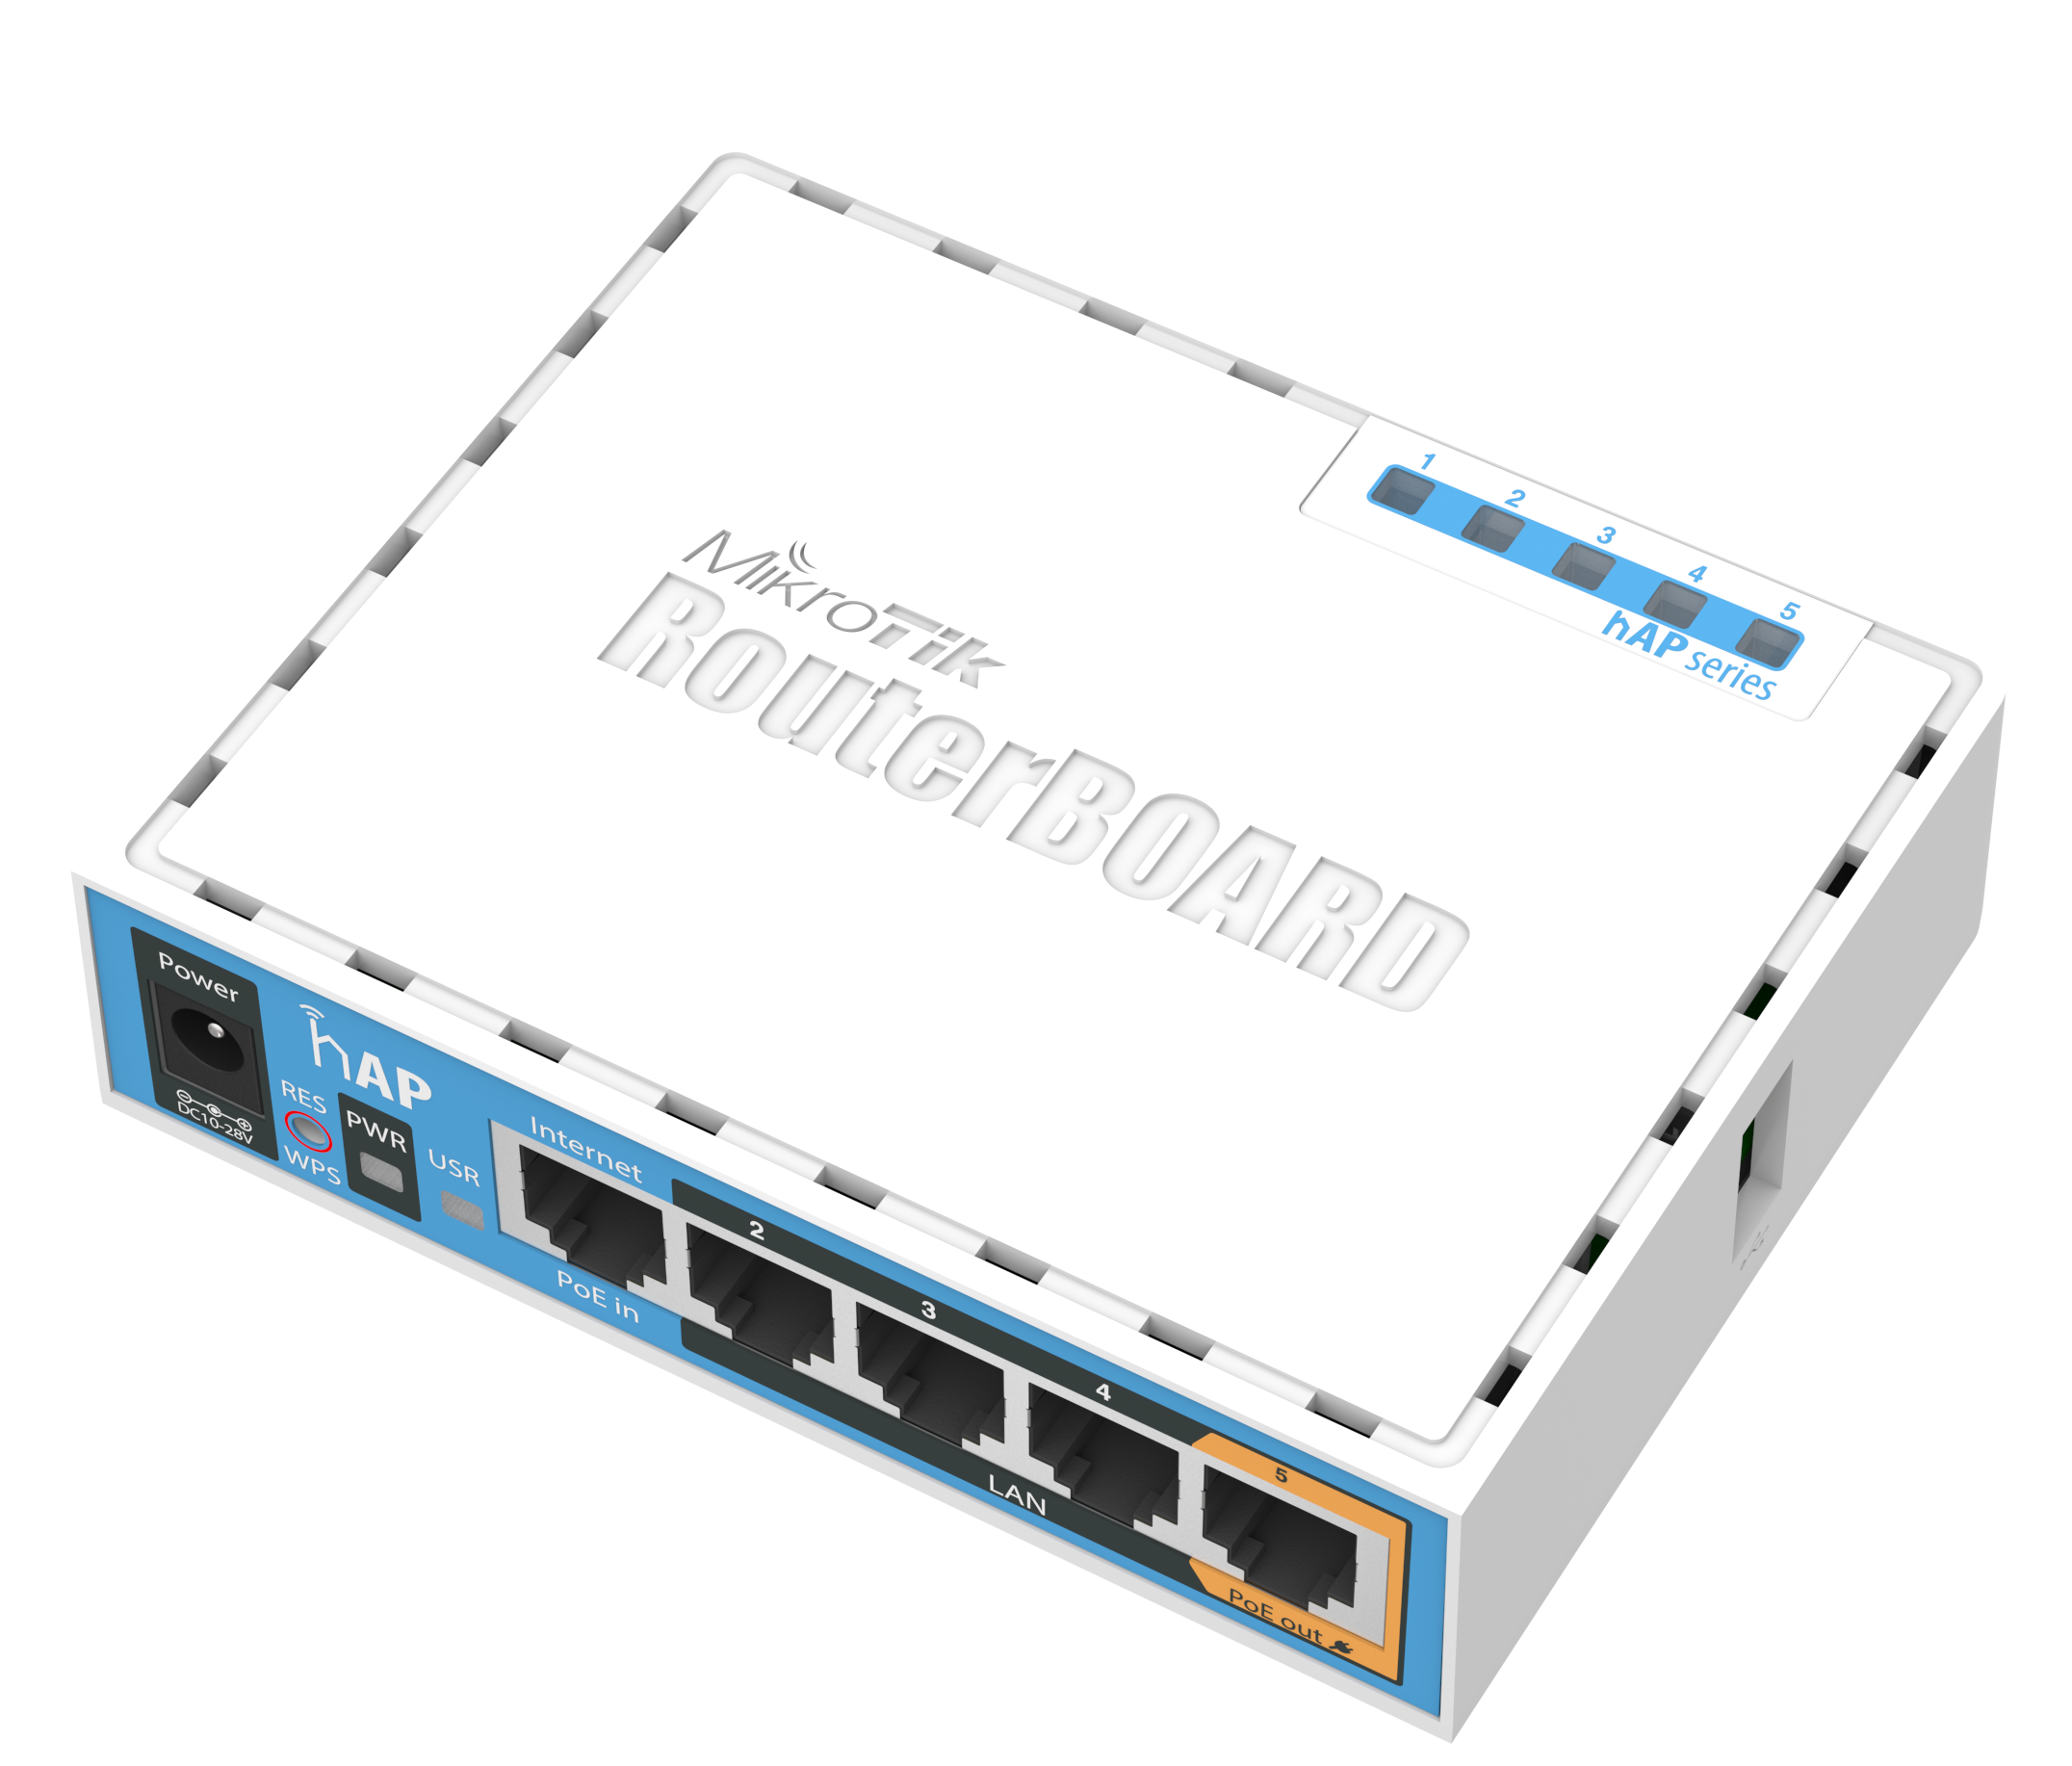 RB951Ui-2nD Mikrotik 951Ui-2nD hAP, 5xLAN, 2.4 Ghz, L4, Ap / Router / Firewall / Hotspot